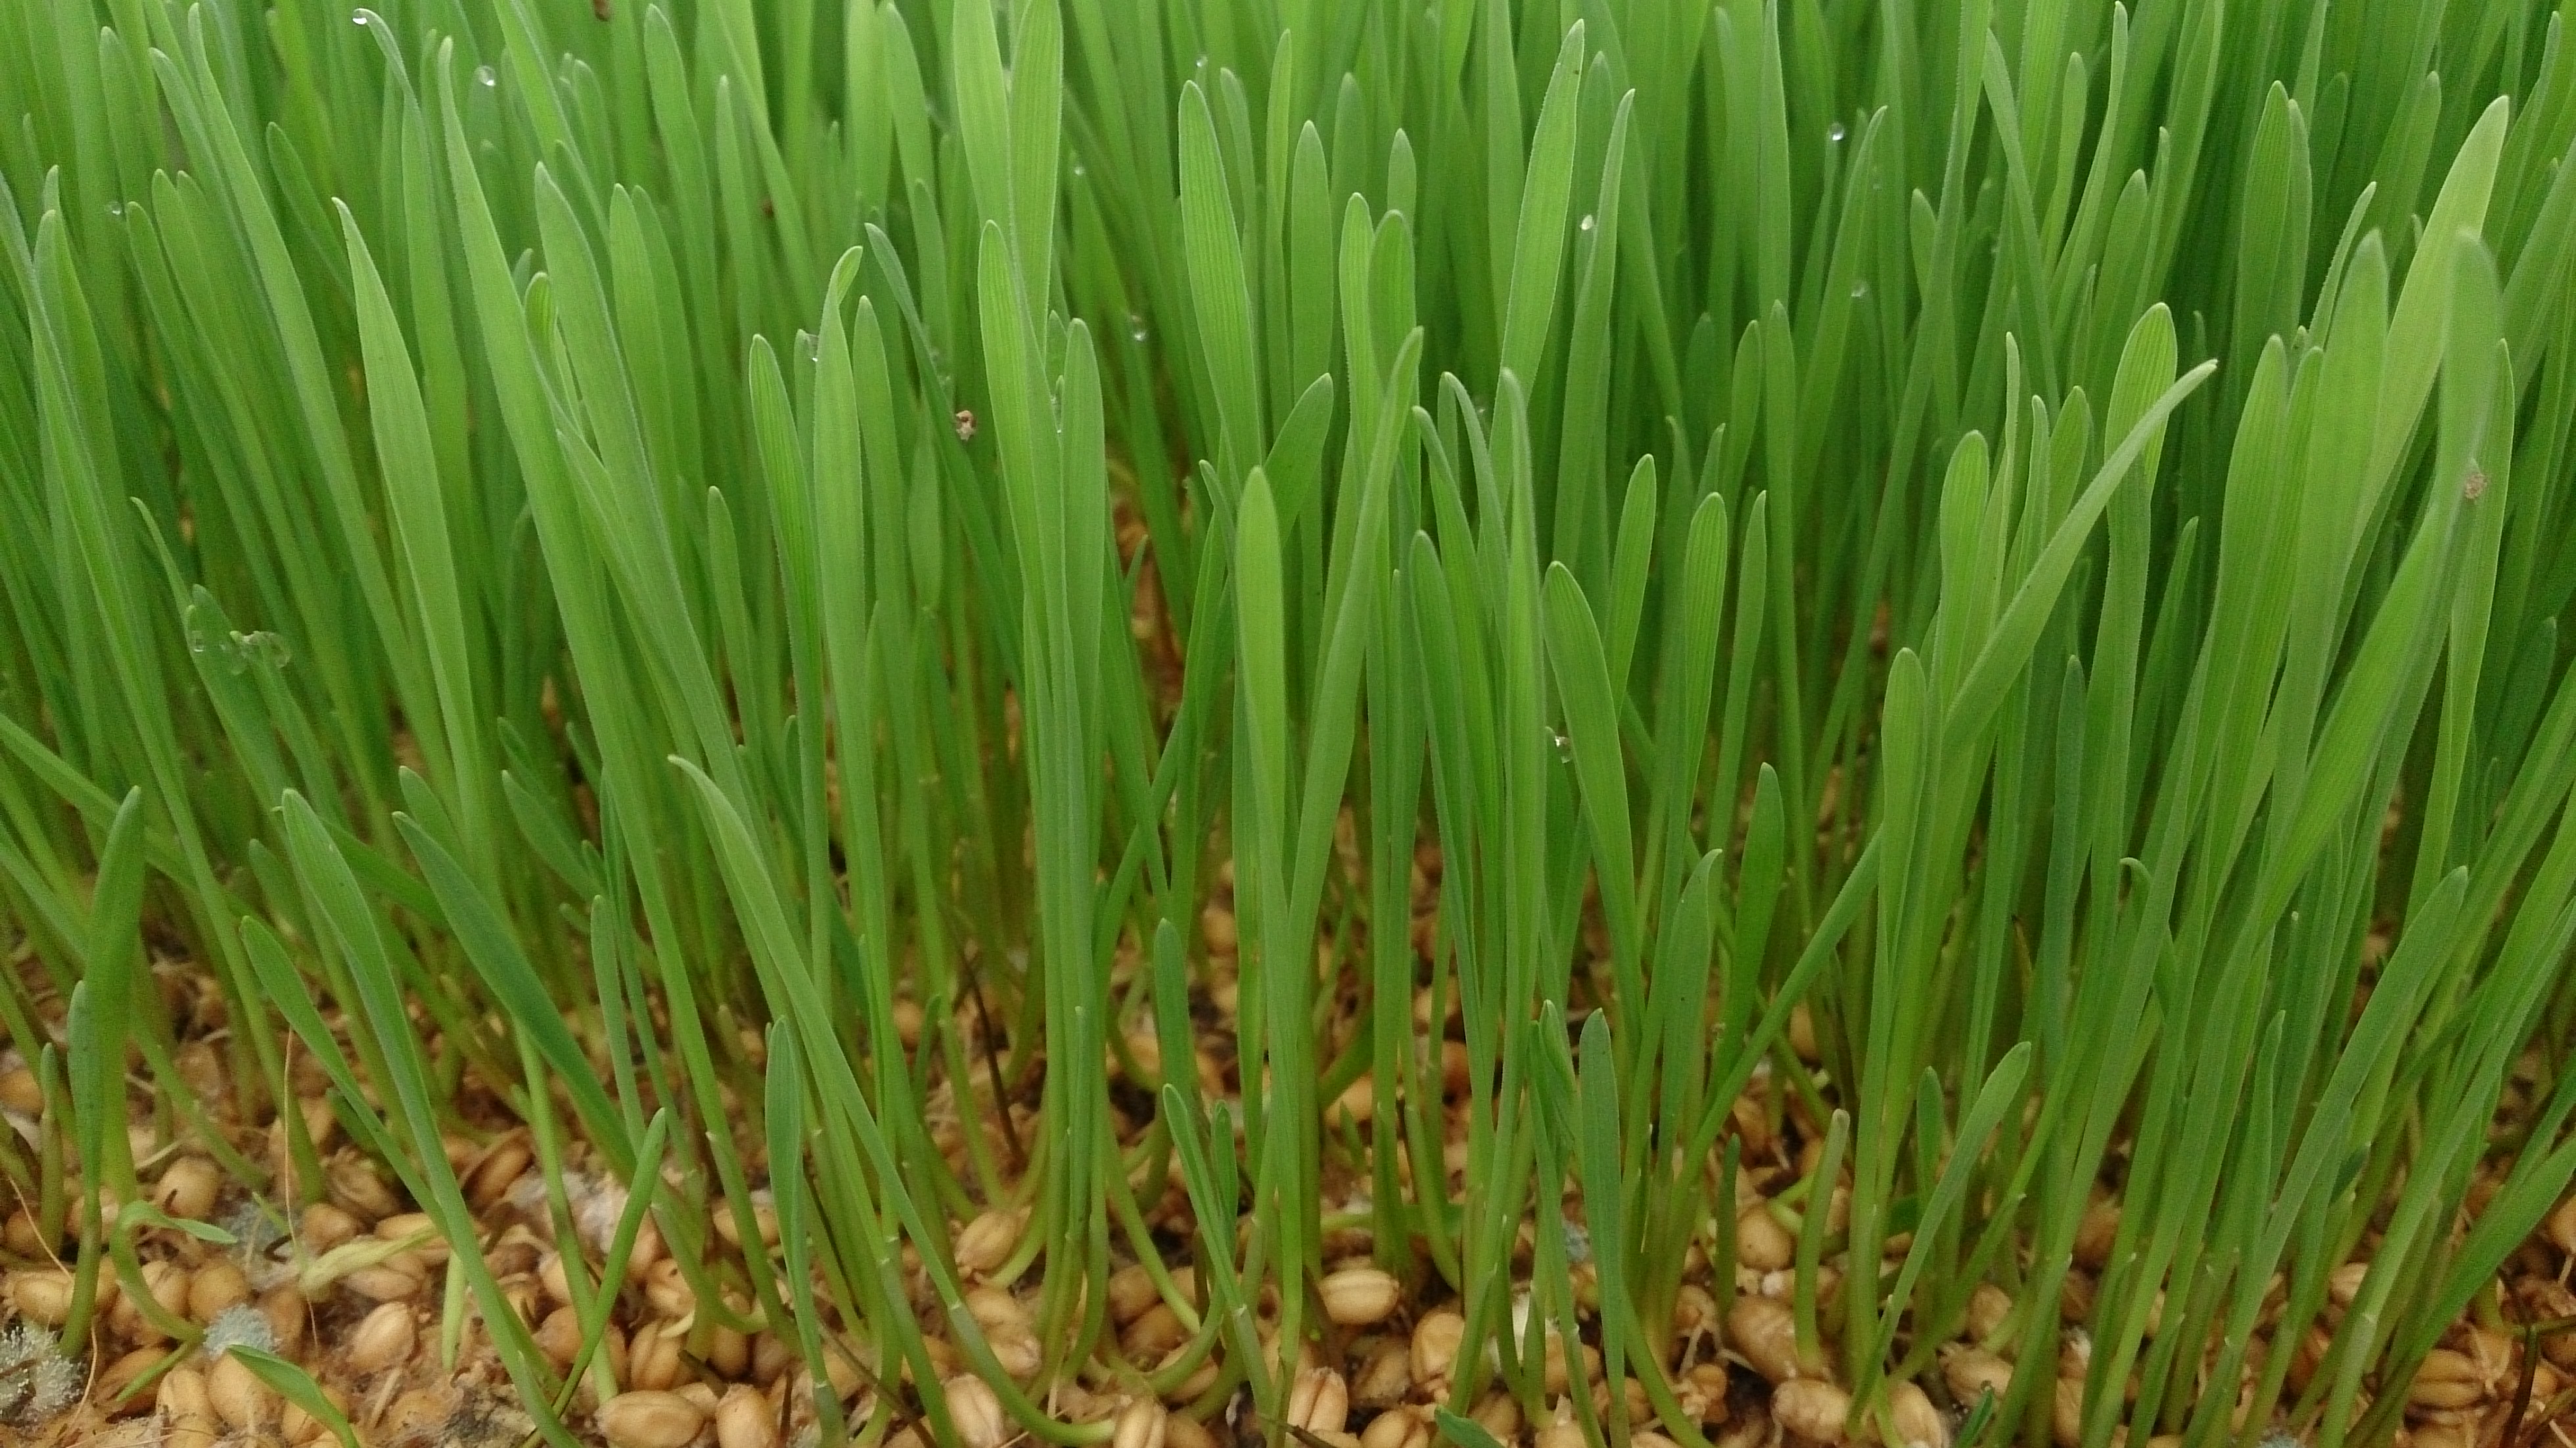 Comment faire pousser de l'herbe de blé en 5 étapes simples